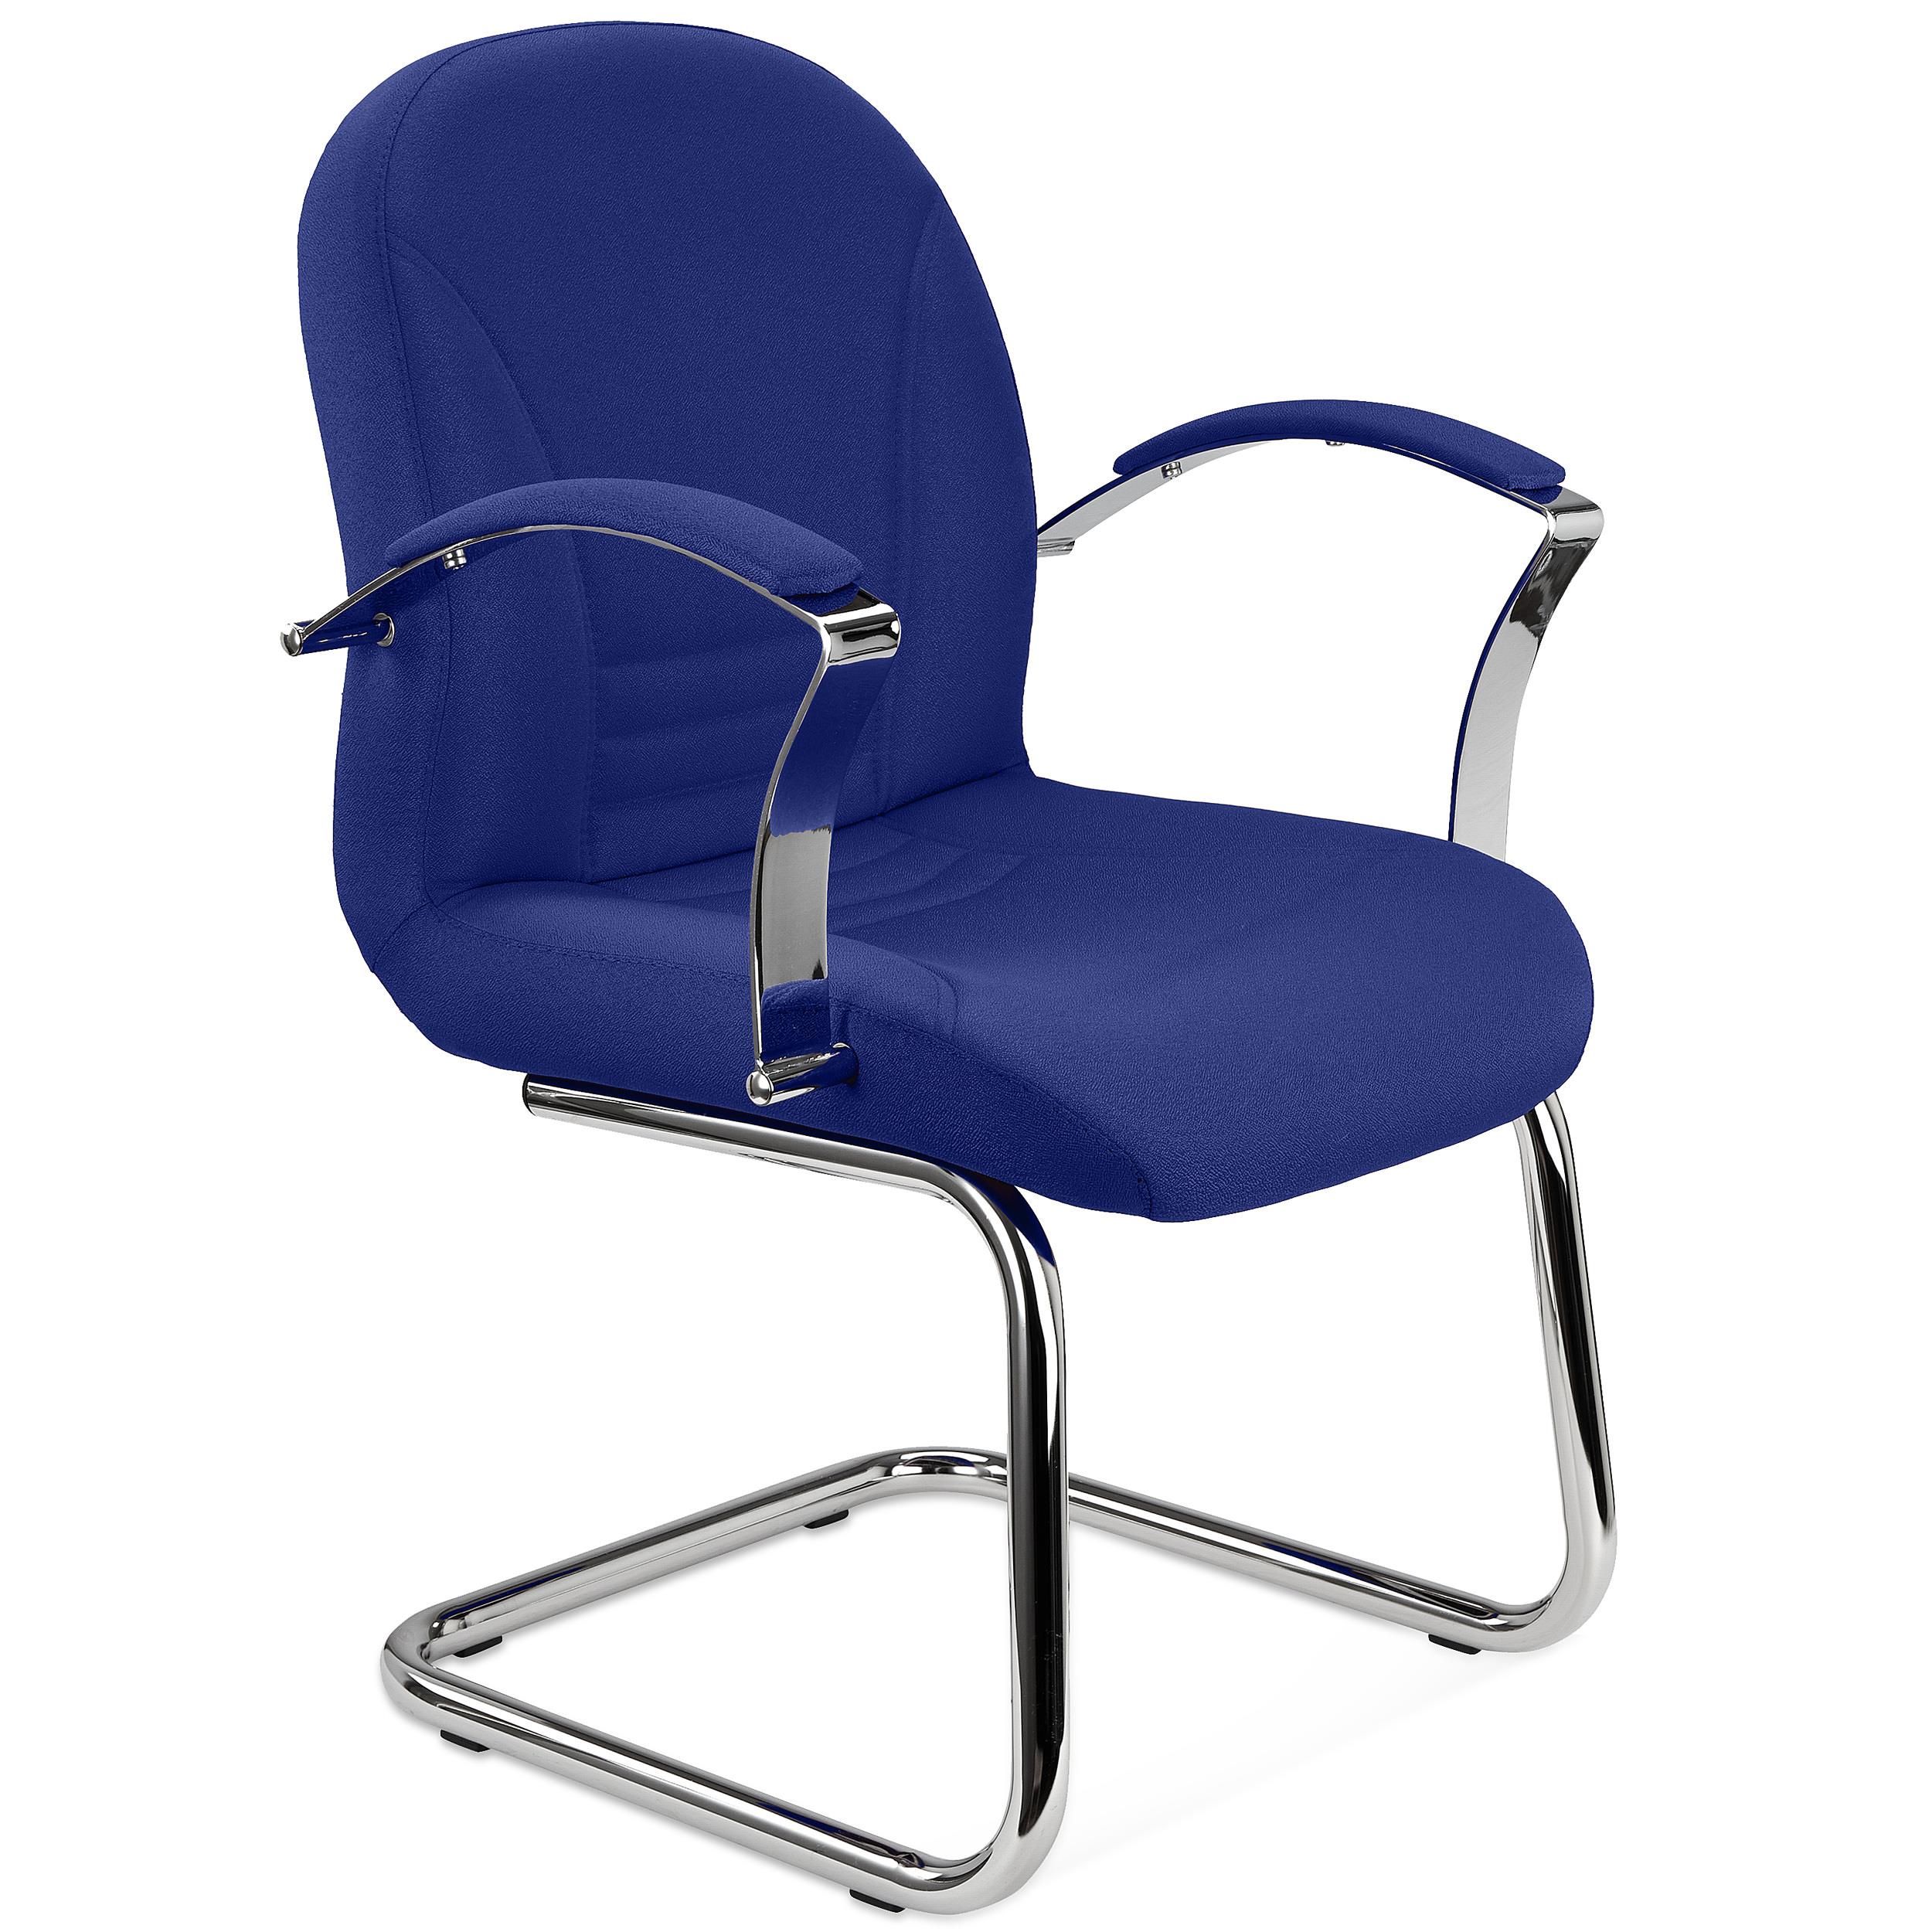 Chaise visiteur CANCUN, Rembourrage Épais, Structure Métallique, en Tissu Bleu Foncé